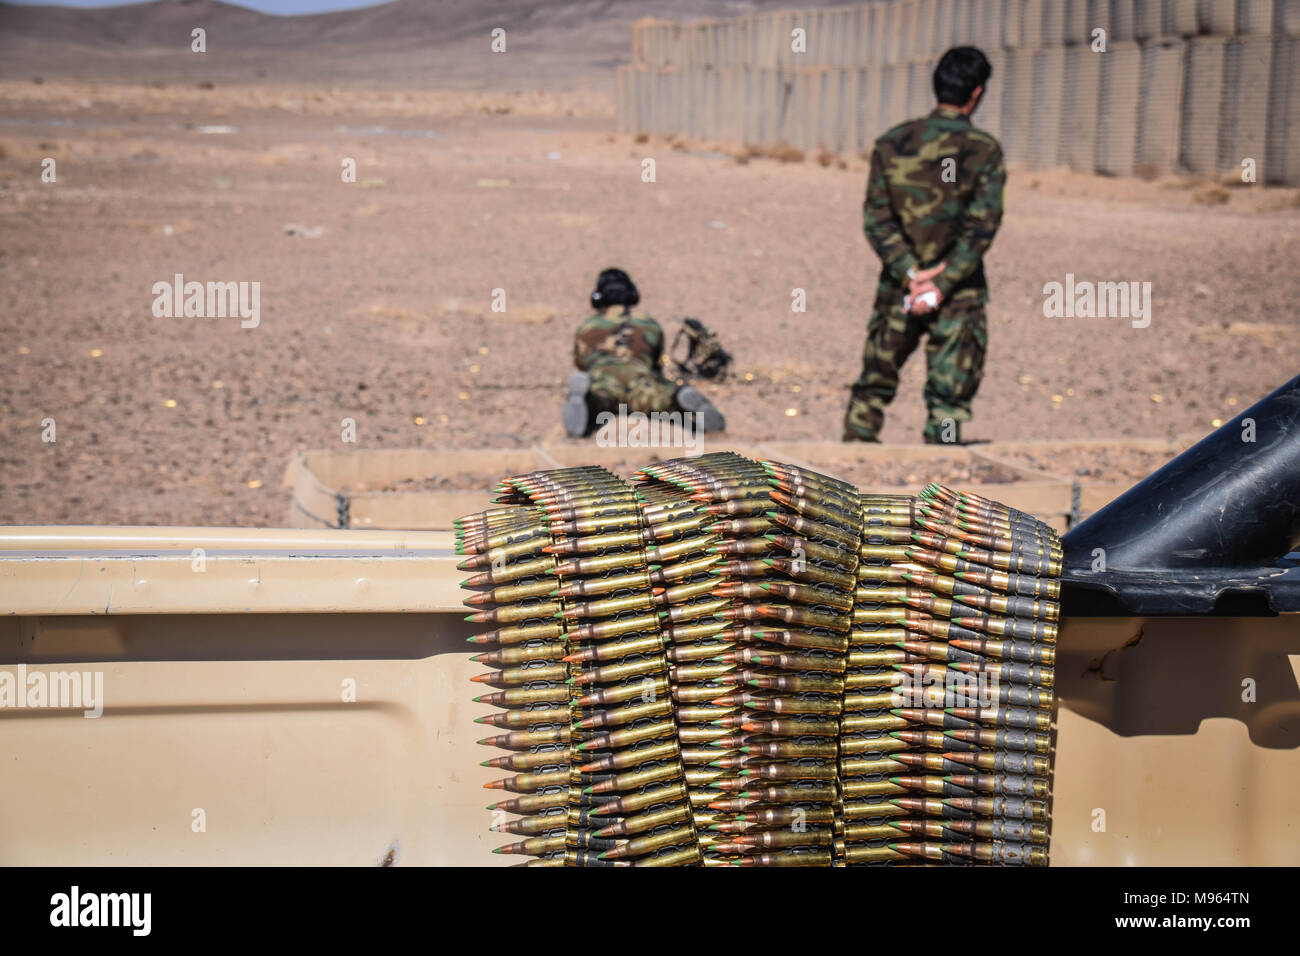 M249 balles de mitrailleuses légères sur un camion. Dans l'arrière-plan, les Forces spéciales afghanes mener à la cible sur un champ de tir juste en dehors de la base militaire de Shindand, province de Herat. Les forces militaires d'élite de l'Afghanistan - les Commandos et les Forces spéciales sont un des éléments clés de la stratégie américaine en Afghanistan et à son tour la lutte contre les talibans et autres insurgés autour. Ces photos montrent les Commandos et les forces spéciales au cours de l'entraînement et sur le terrain ; également juste avant et après une opération de l'ouest dans la province afghane de Farah. Banque D'Images